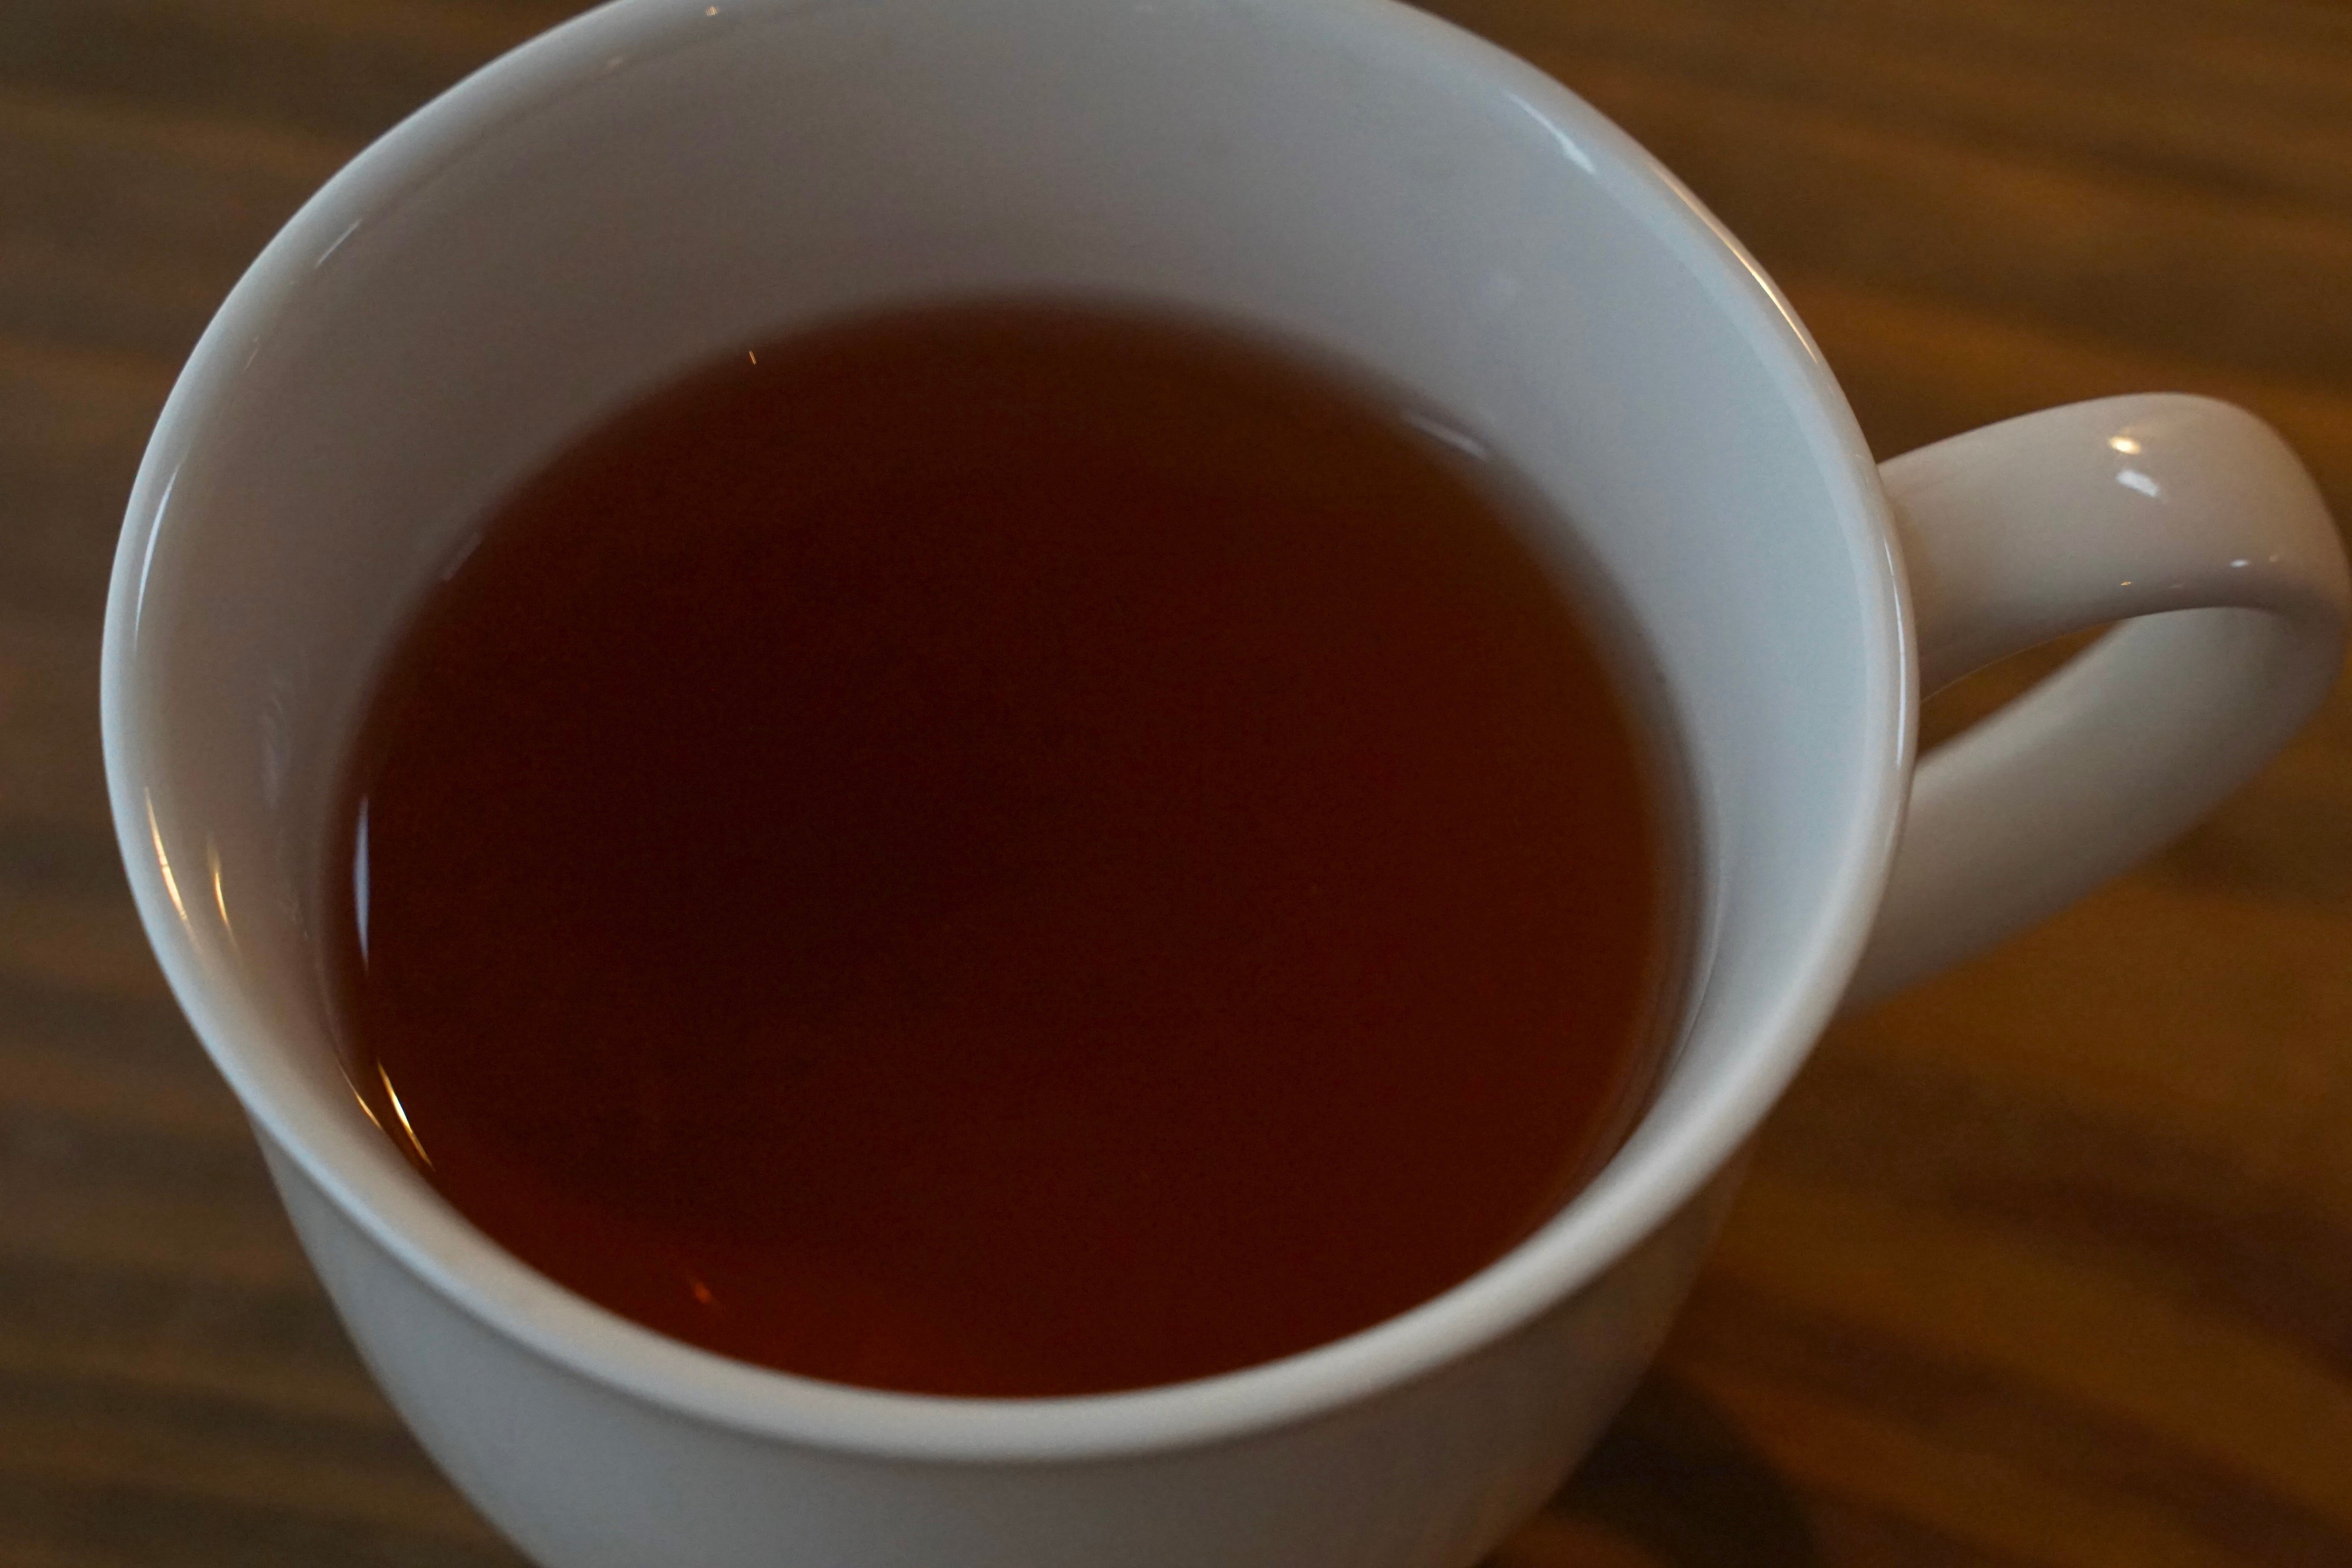 【イラム紅茶アンボート茶園 新茶】ダージリン隣接地産 稀少ネパール紅茶 甘く奥深い味わい